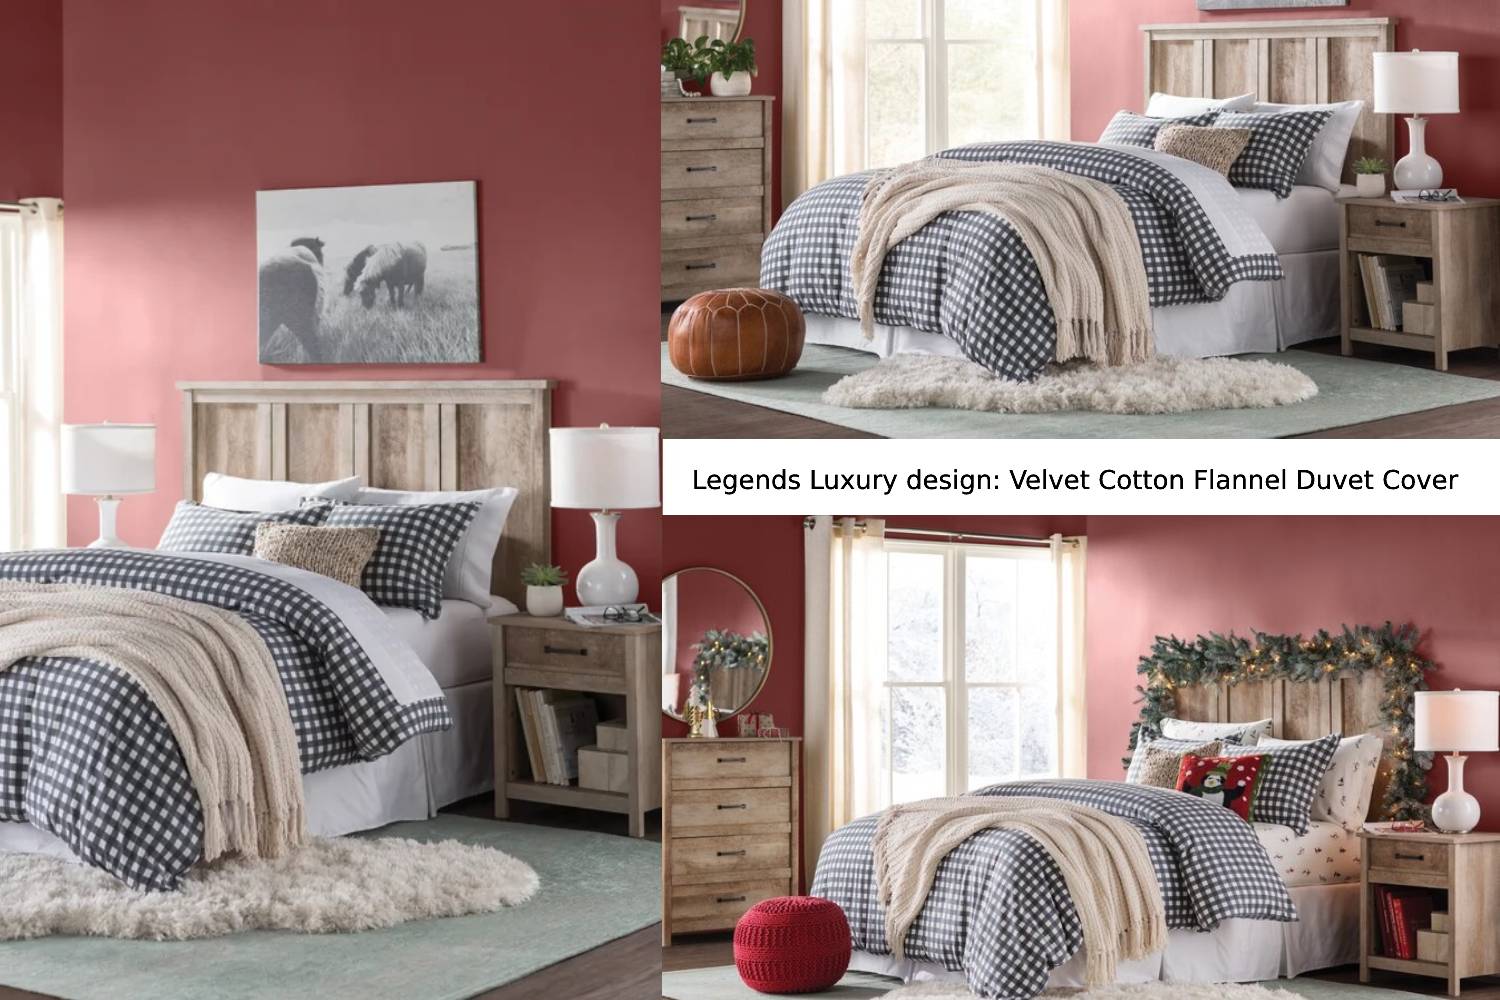 Legends Luxury design: Velvet Cotton Flannel Duvet Cover